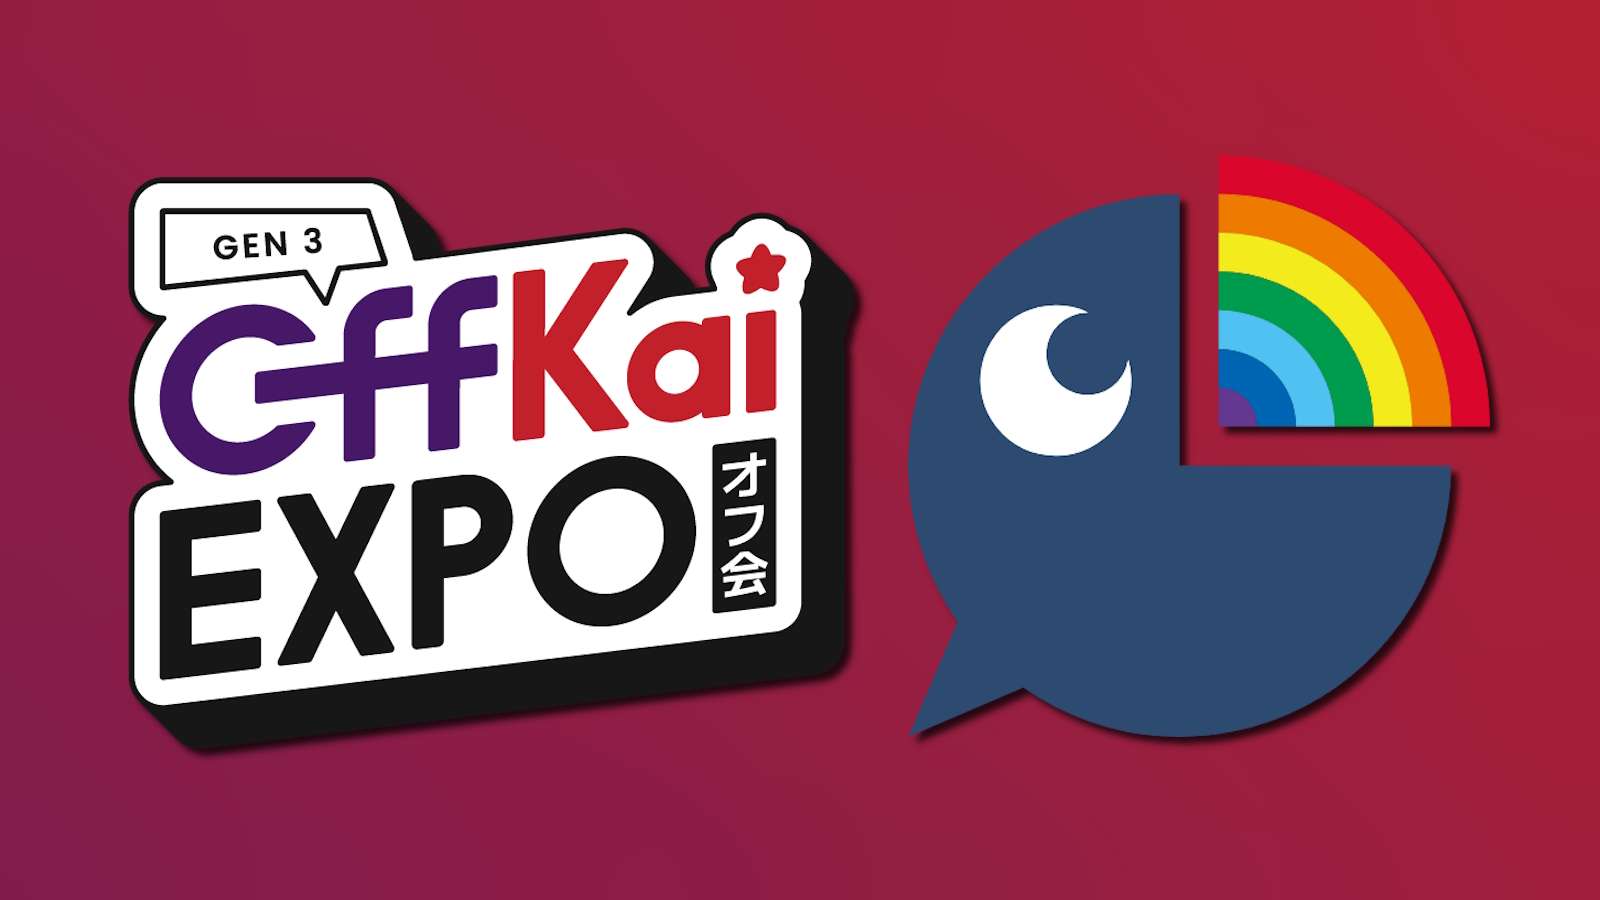 OffKai Expo and Nijisanji logo.